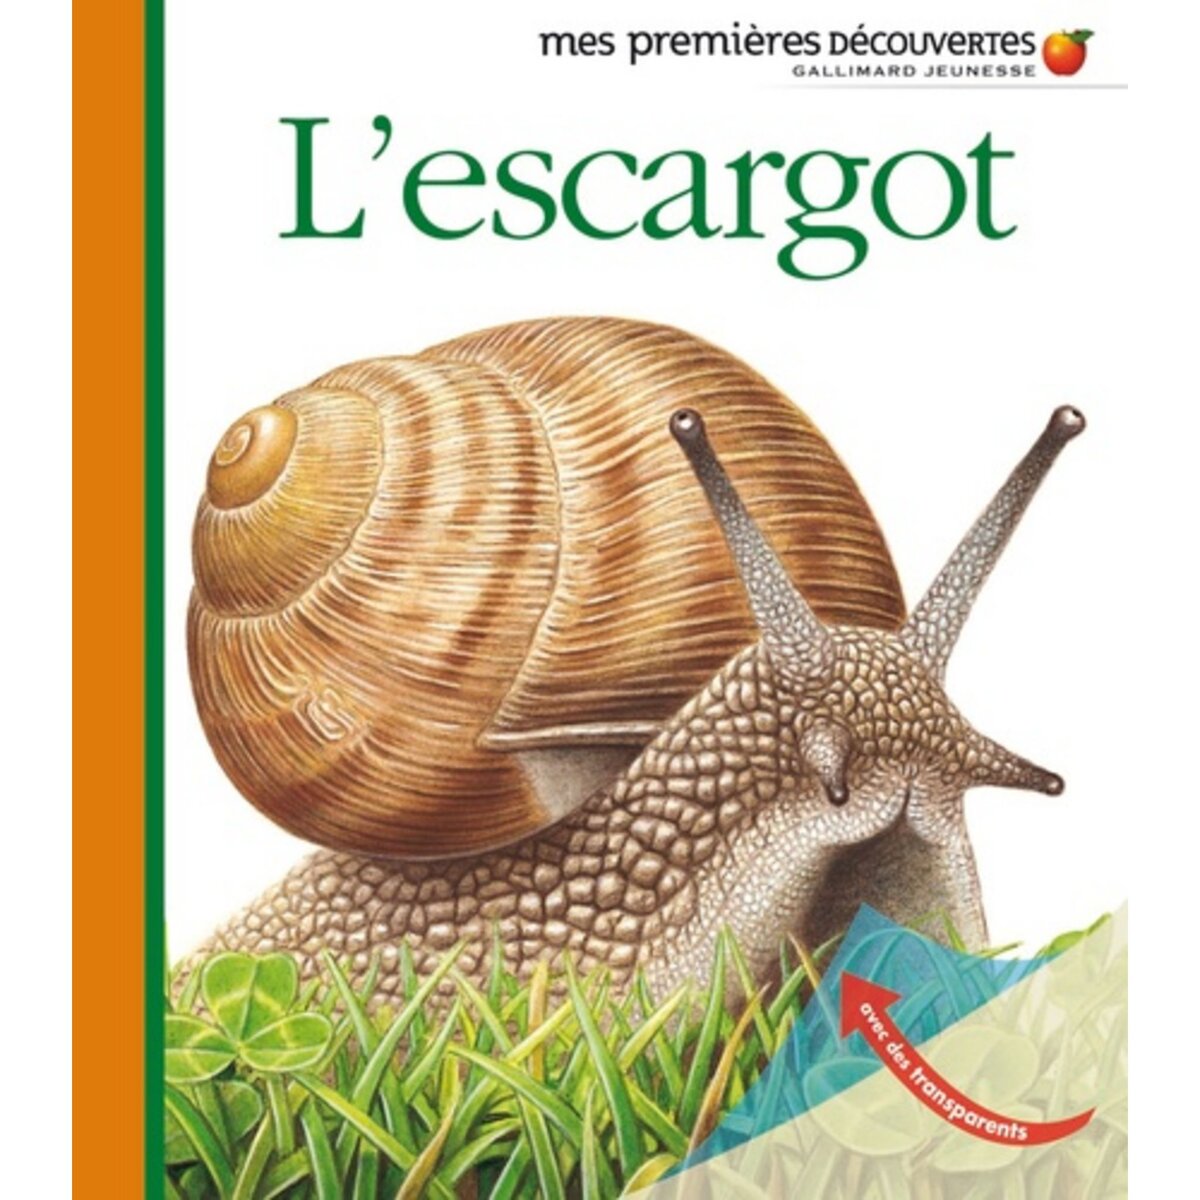  L'ESCARGOT, Hugo Pierre de